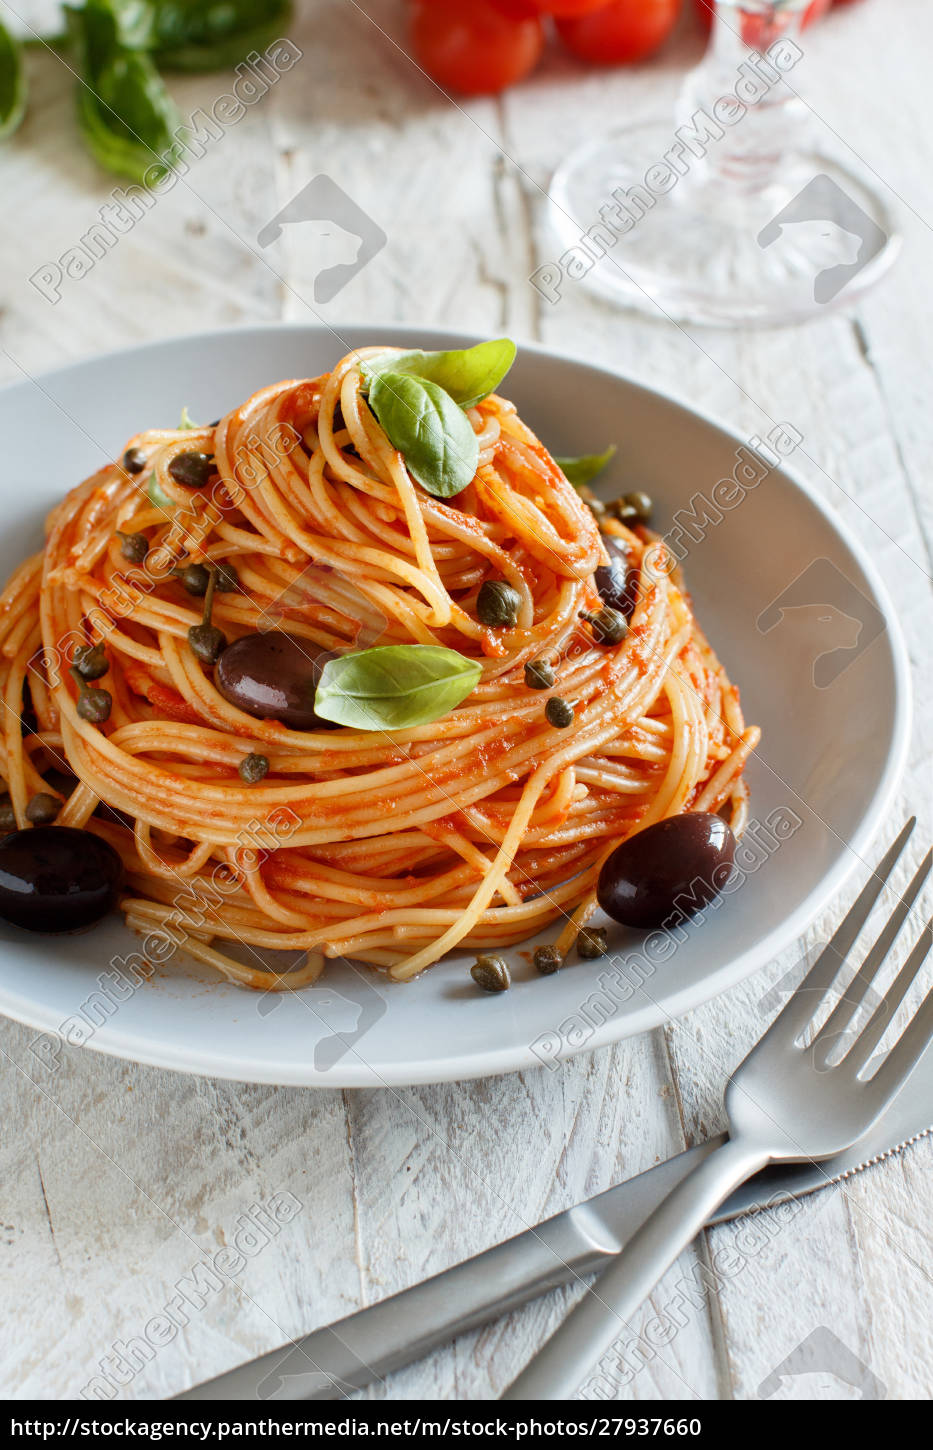 Spaghetti mit Tomatensauce Oliven und Kapern - Lizenzfreies Foto ...